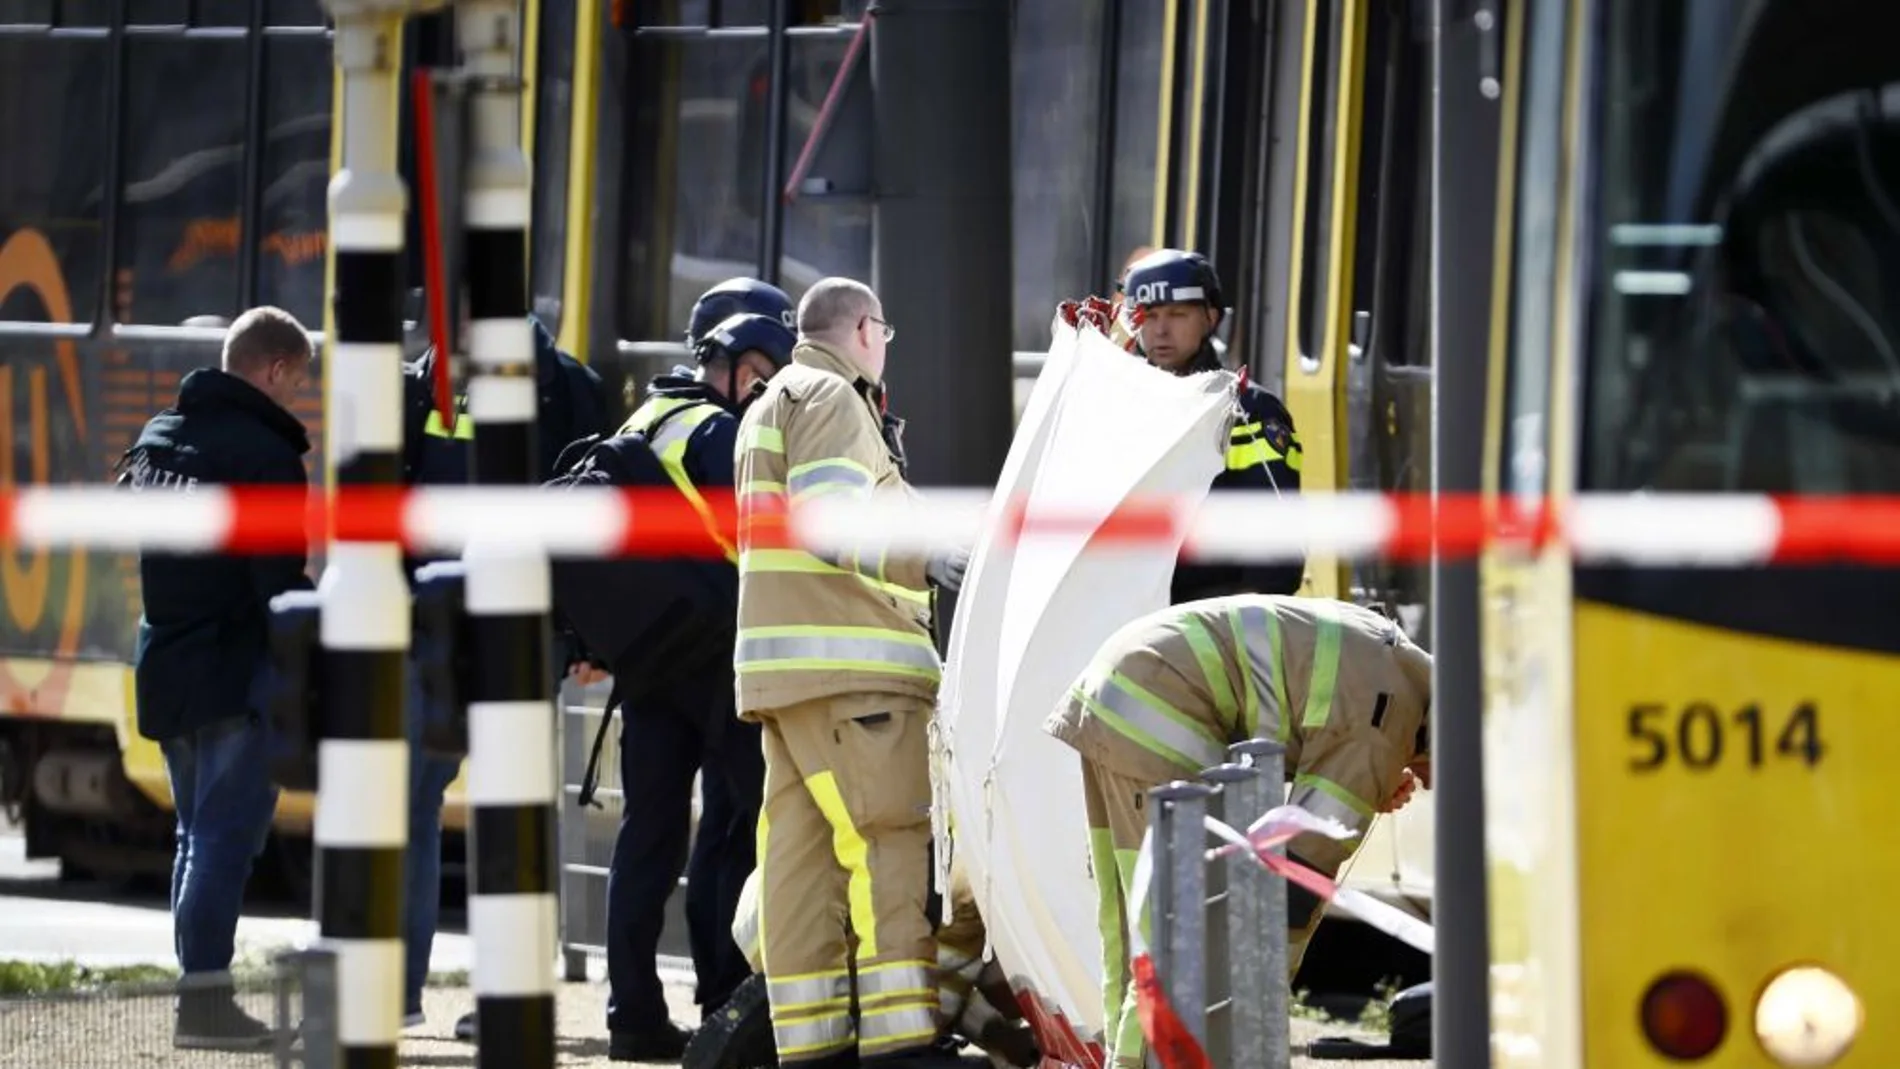  Tiroteo en una plaza de Utrecht: al menos tres muertos y varios heridos por disparos en la ciudad holandesa